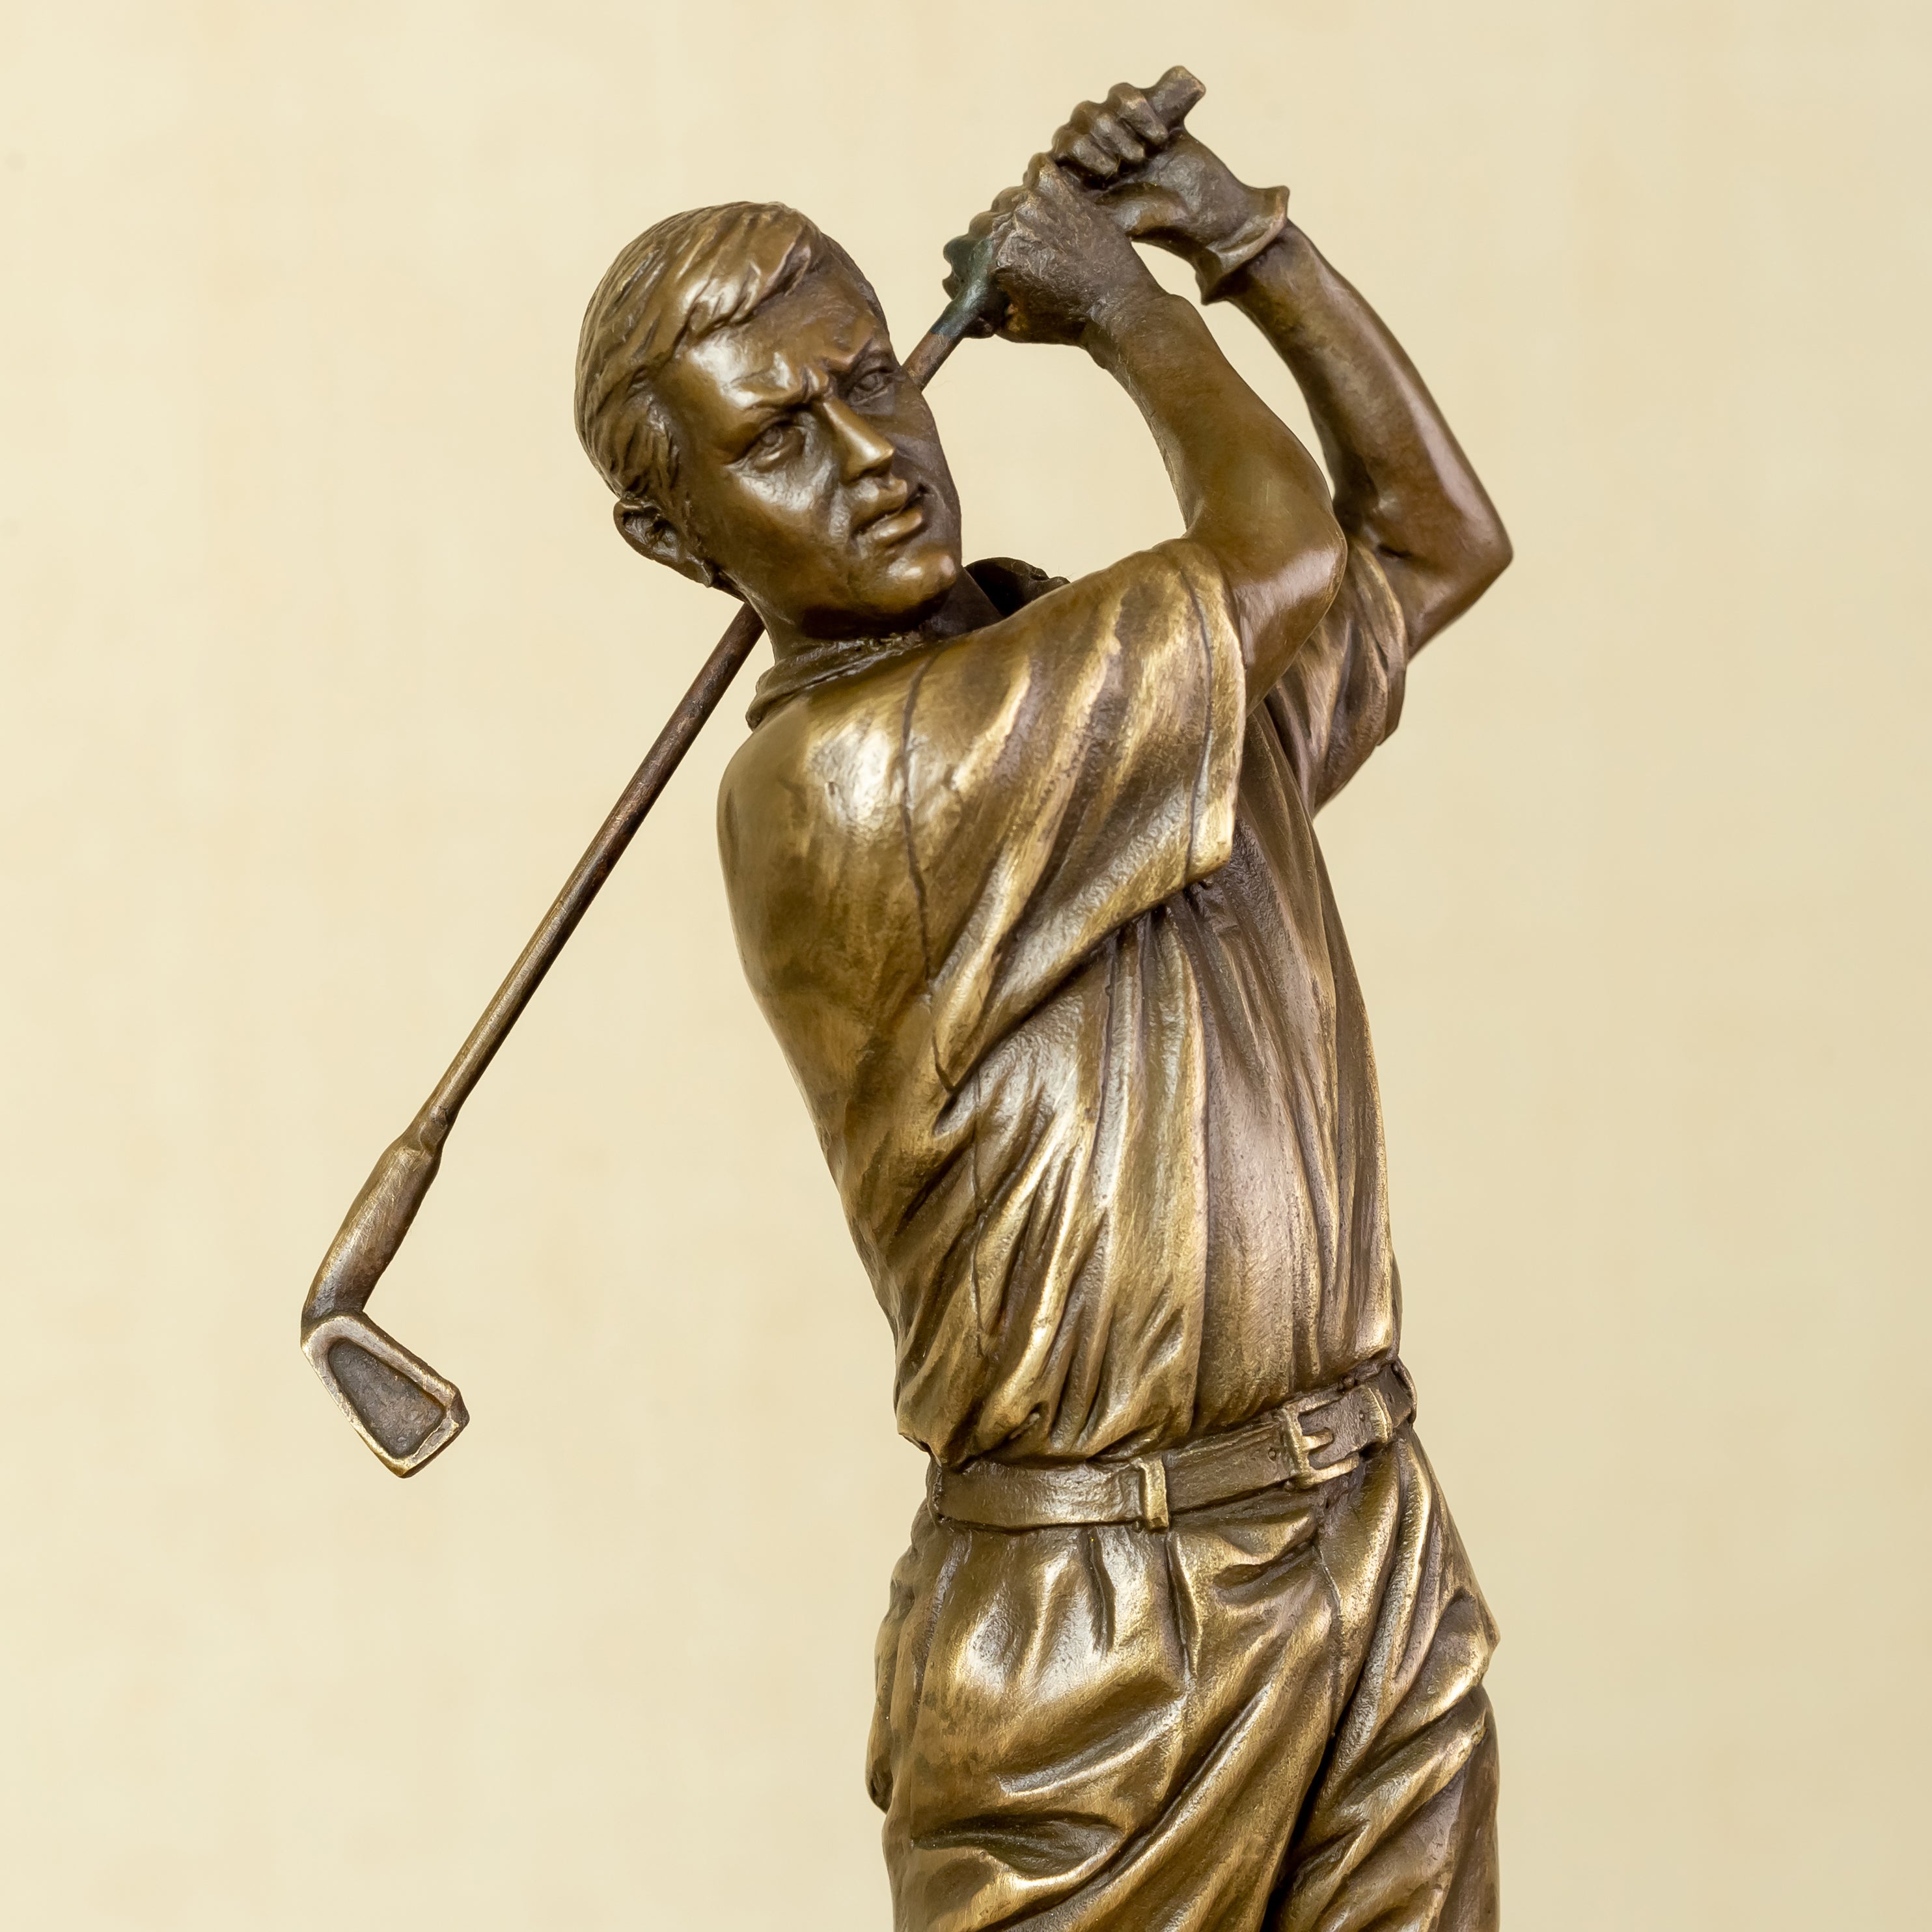 Bronze Golf Man Statue Bronze Golfer Sculpture Office Golf Decor Ornament Bronze Art Crafts Gifts